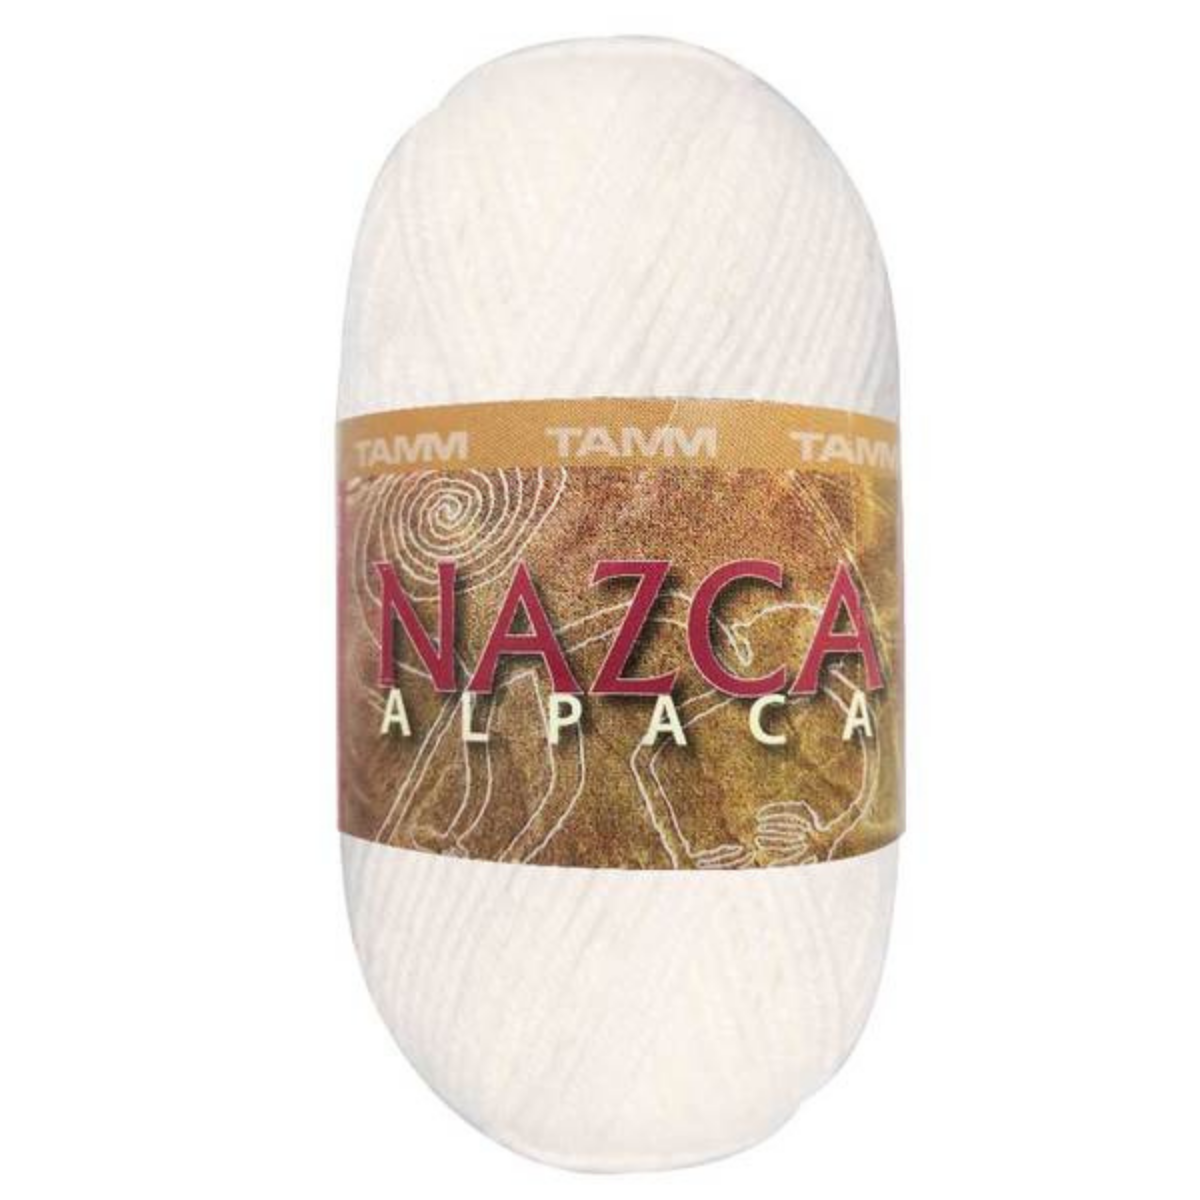 Nazca Andina